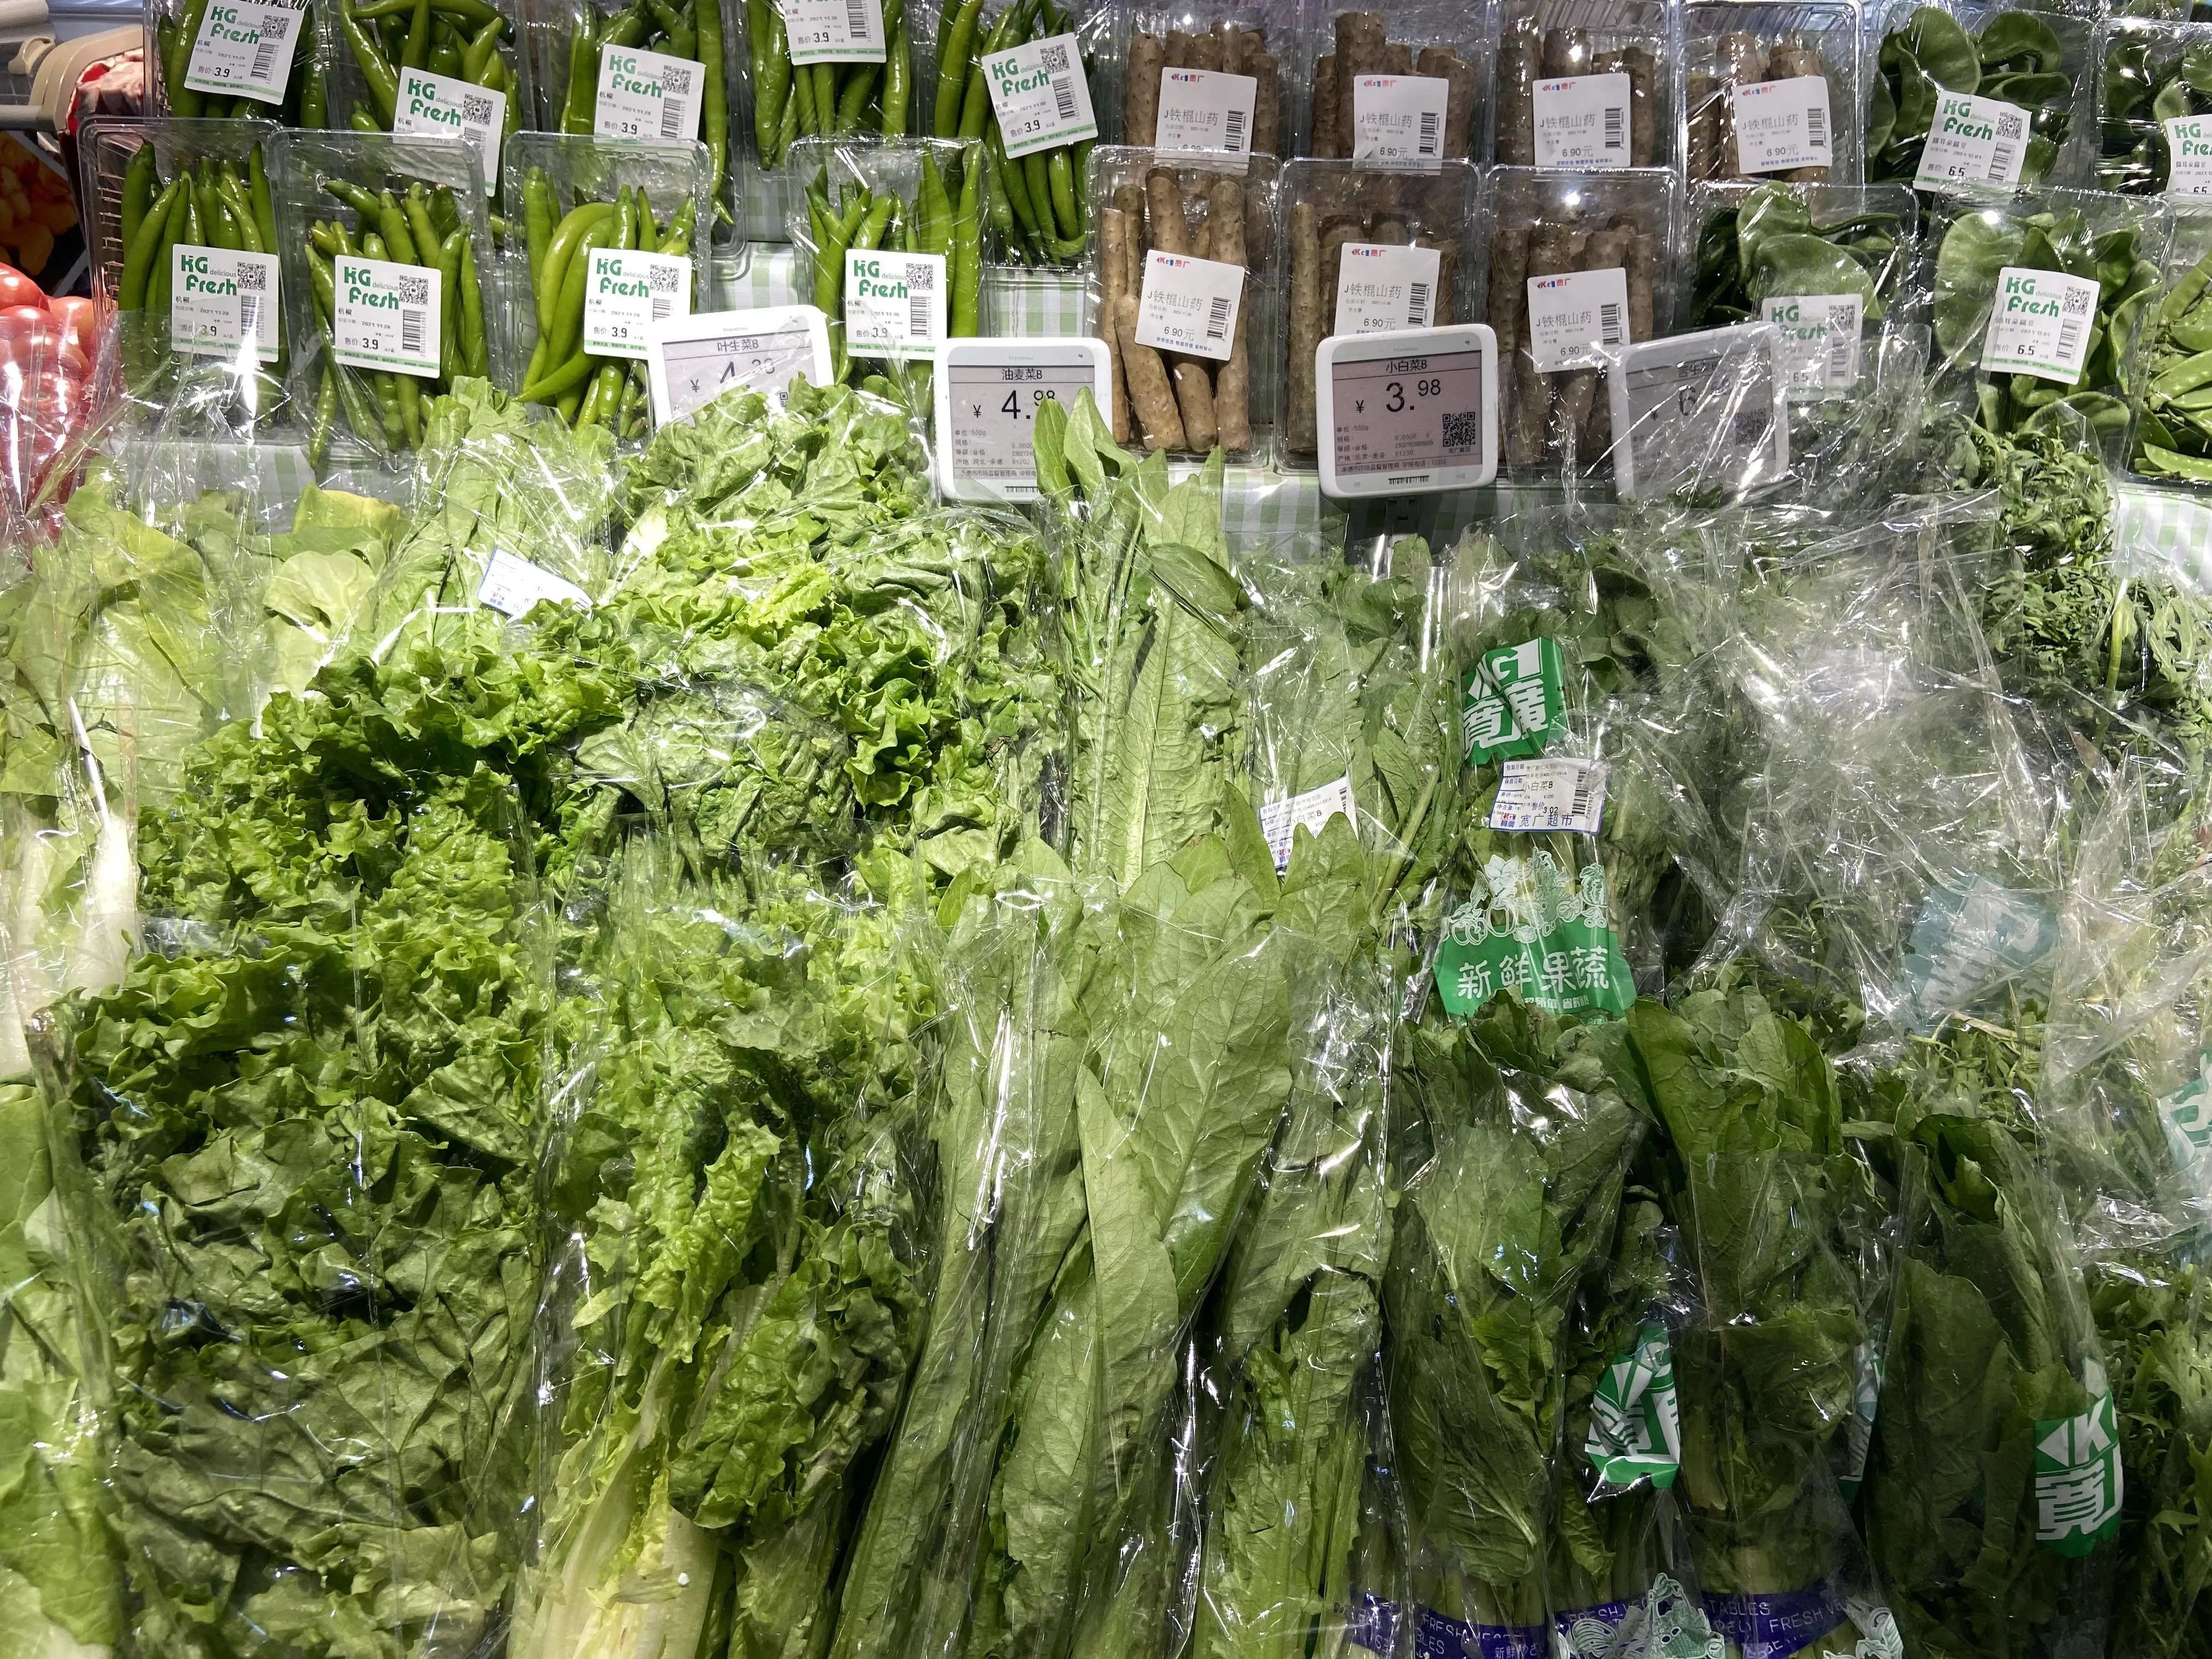 今日承德蔬菜价格「新发地今日蔬菜价格」